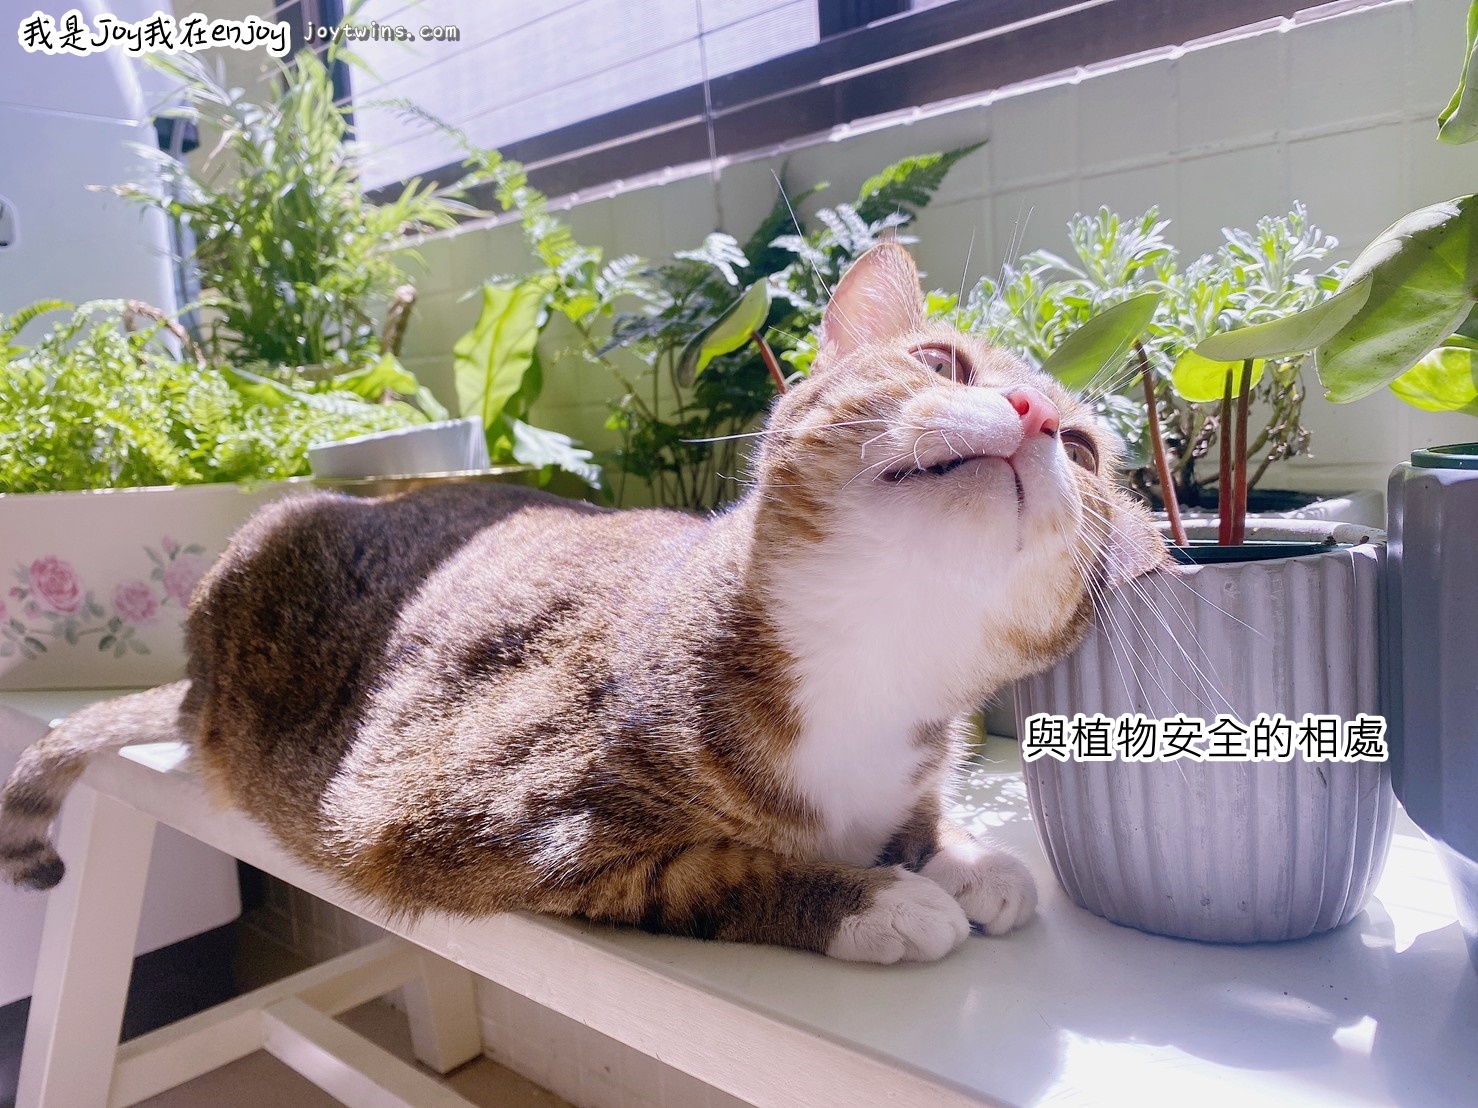 對貓無毒的植物 室內盆栽  淨化空氣與居家生活美感就在每個角落!綠植正夯